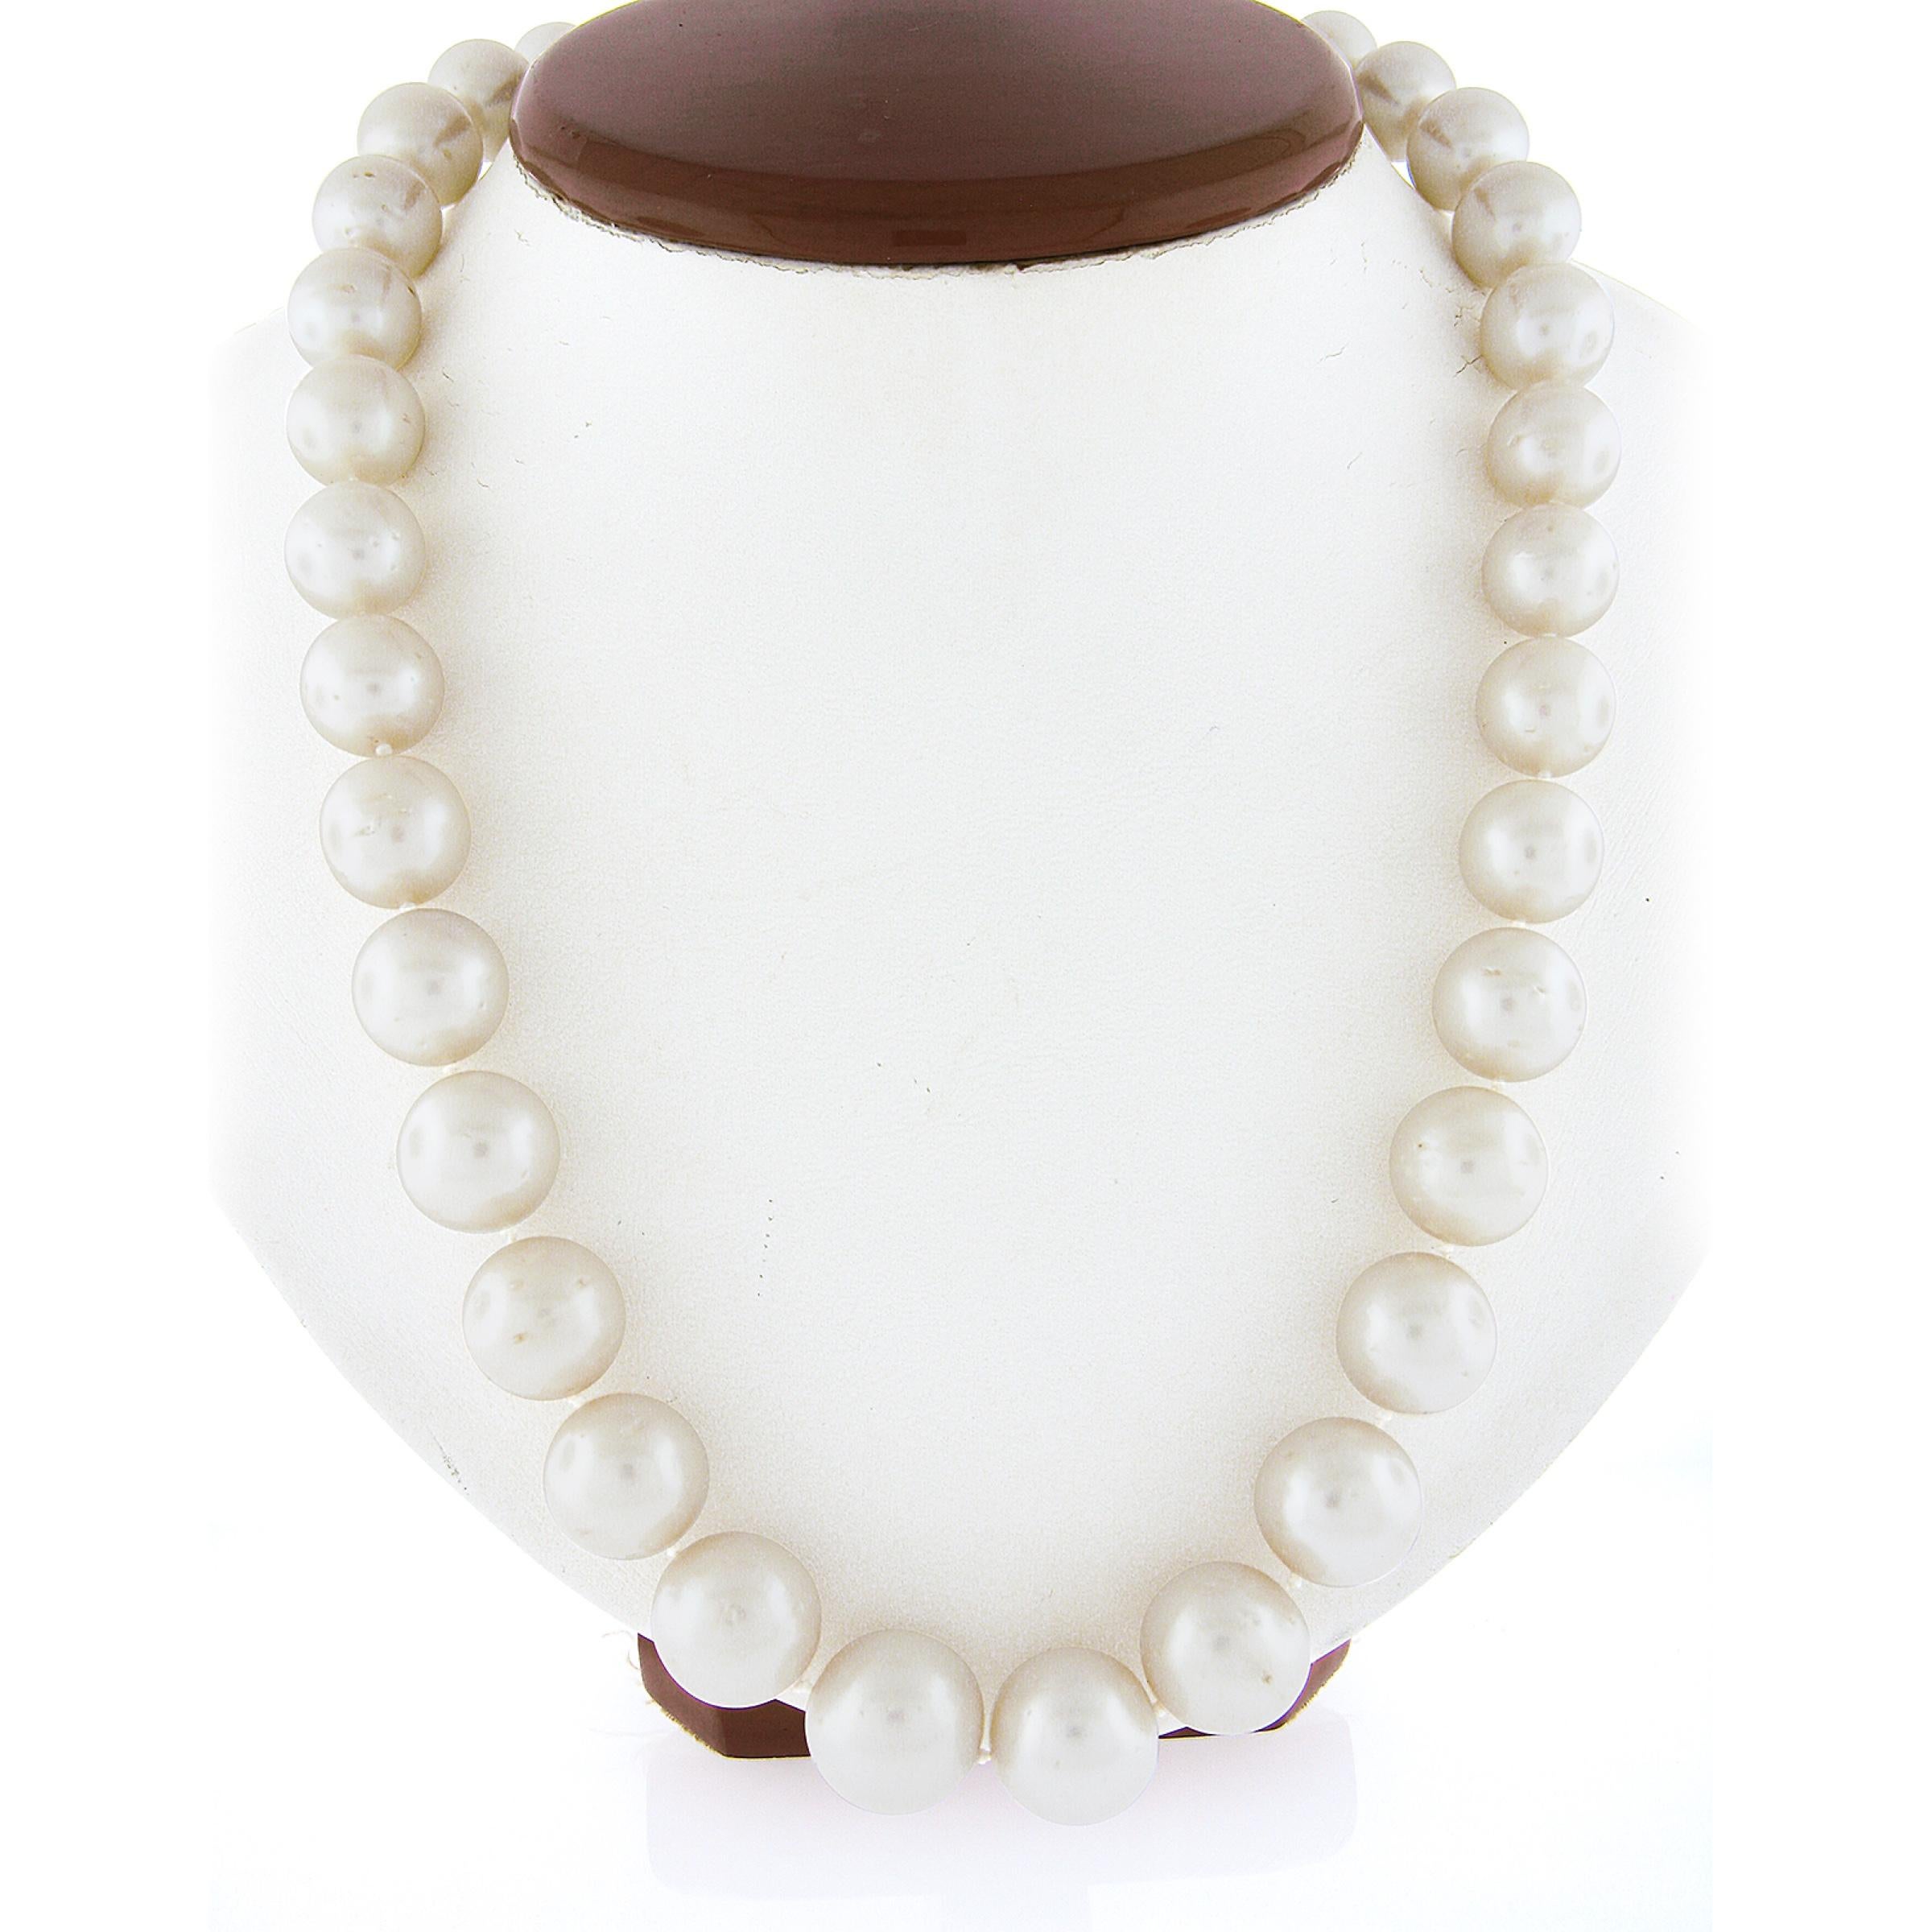 --Pierre(s) :...
(33) Diamants naturels authentiques - taille ronde brillante - sertis en pavé - couleur G-I - pureté VS2/SI1 - 0,75ctw (approx.)
(34) Perles de culture authentiques - forme de perle presque ronde - couleur blanche avec un lustre fin